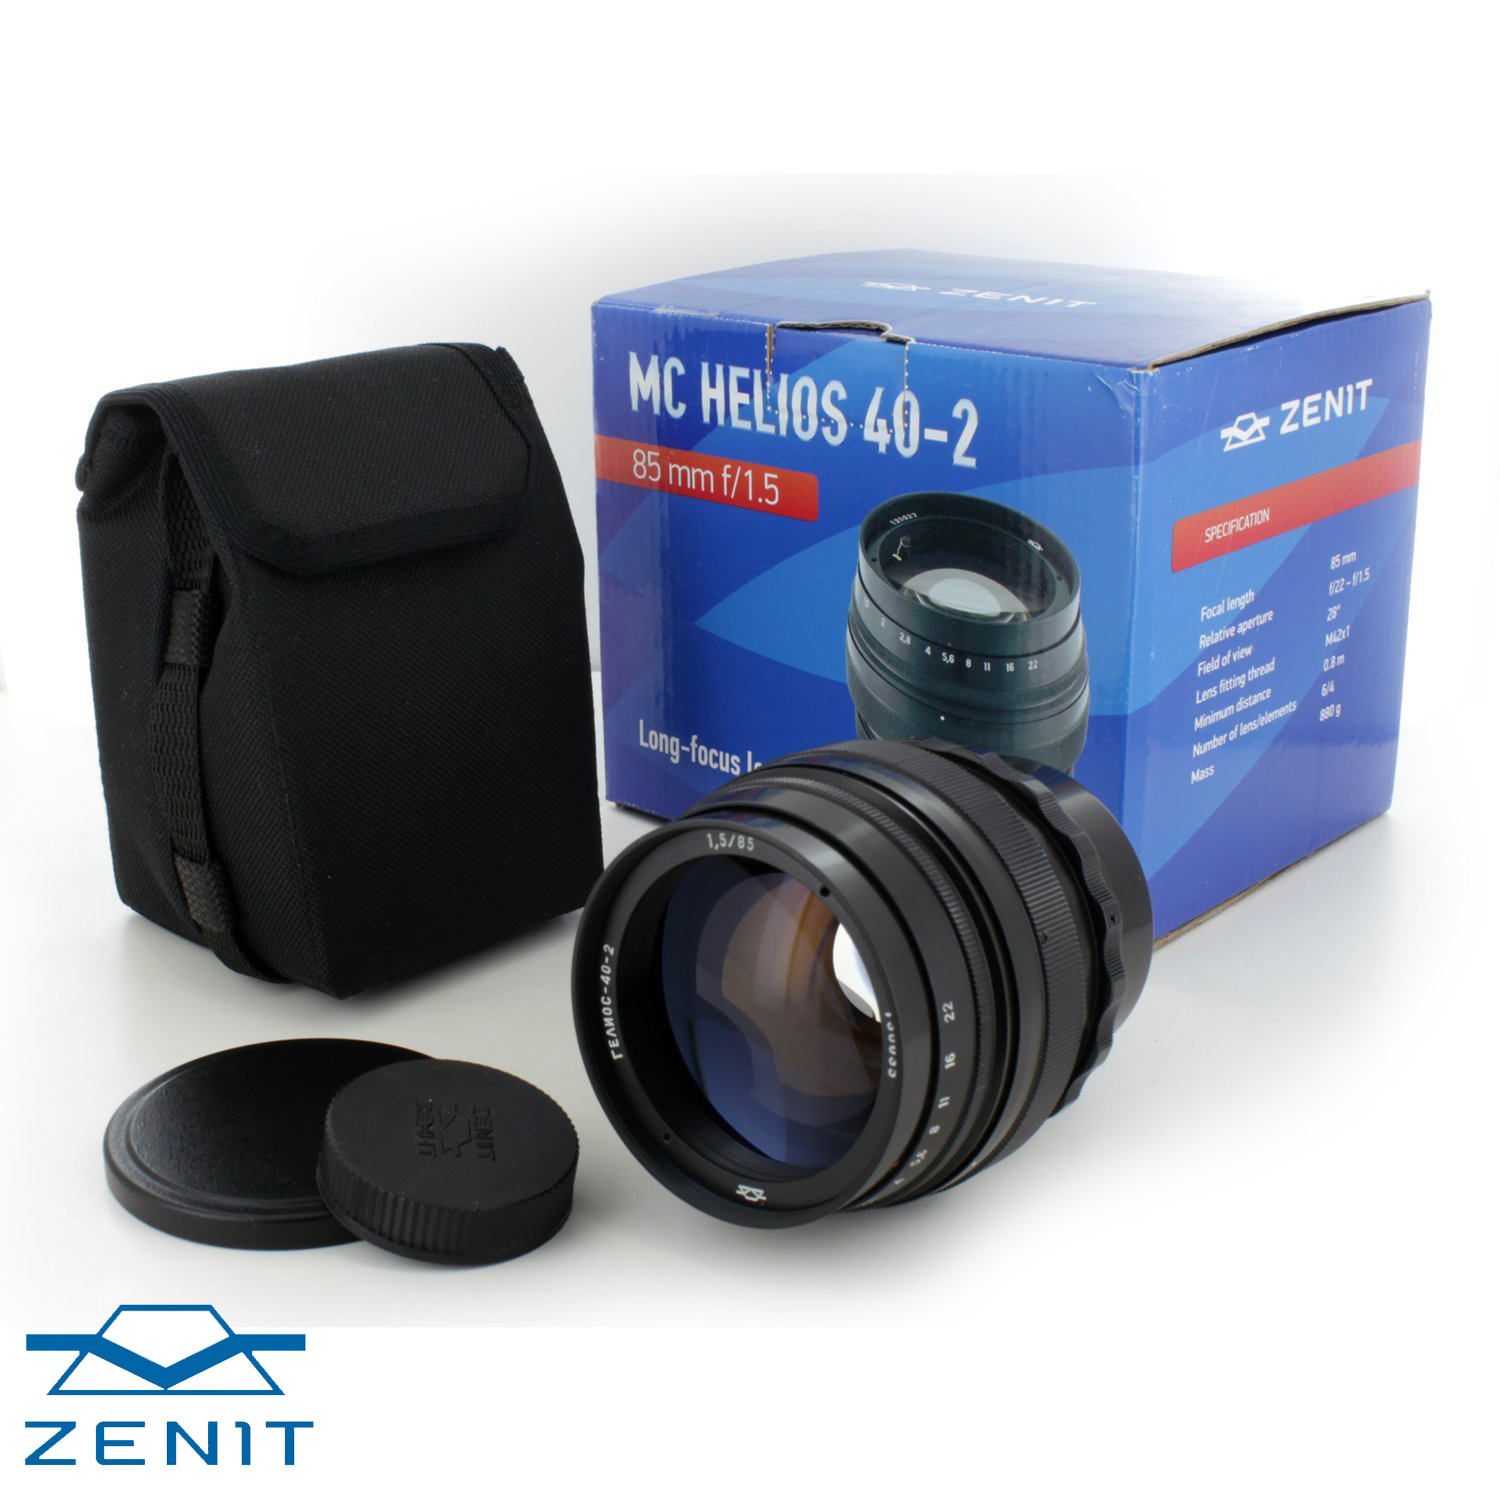 helios lens photos